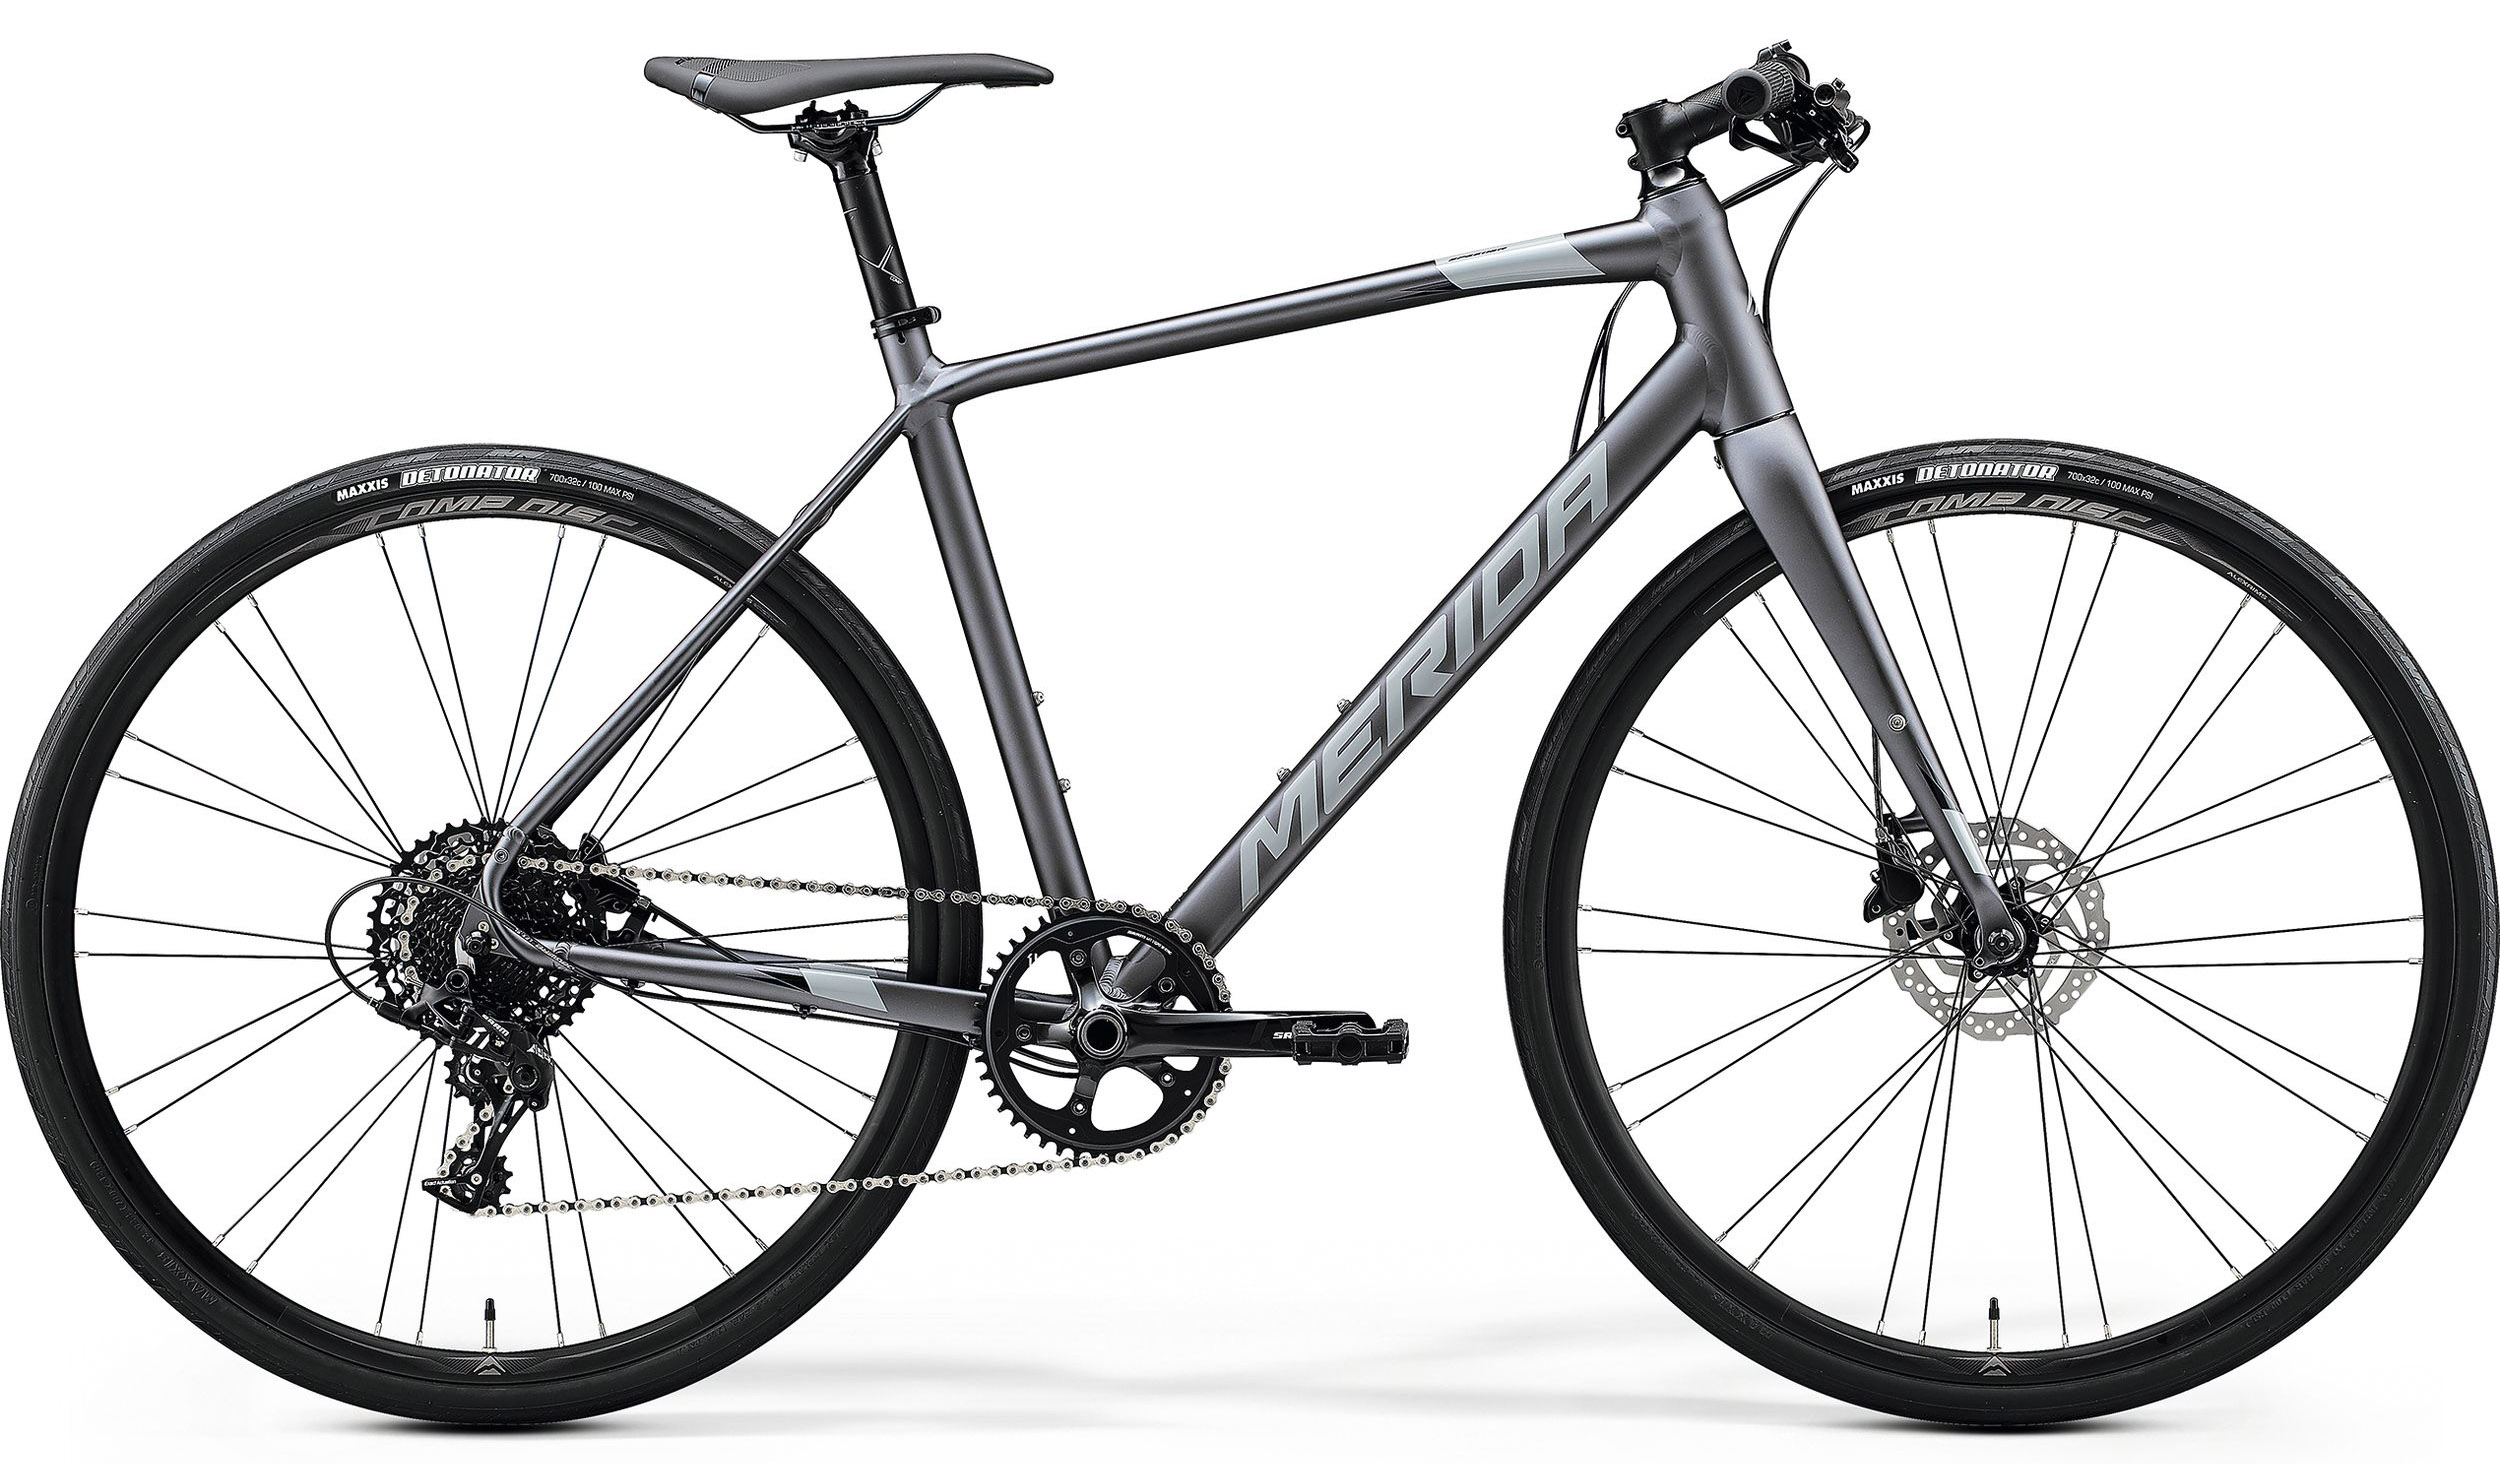  Отзывы о Городском велосипеде Merida Speeder Limited 2020